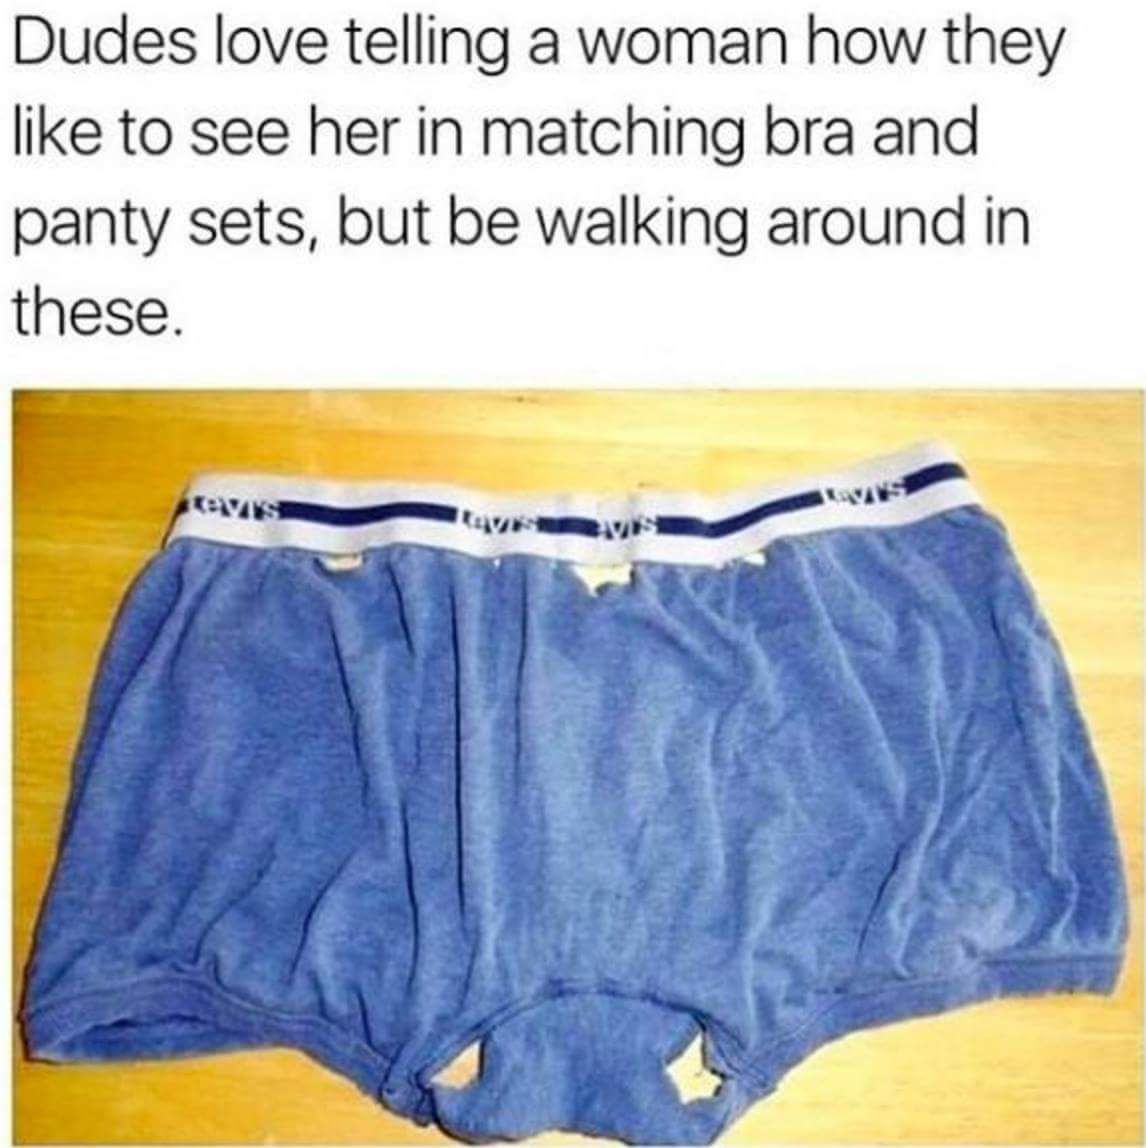 Men gotta get their underwear game straight too